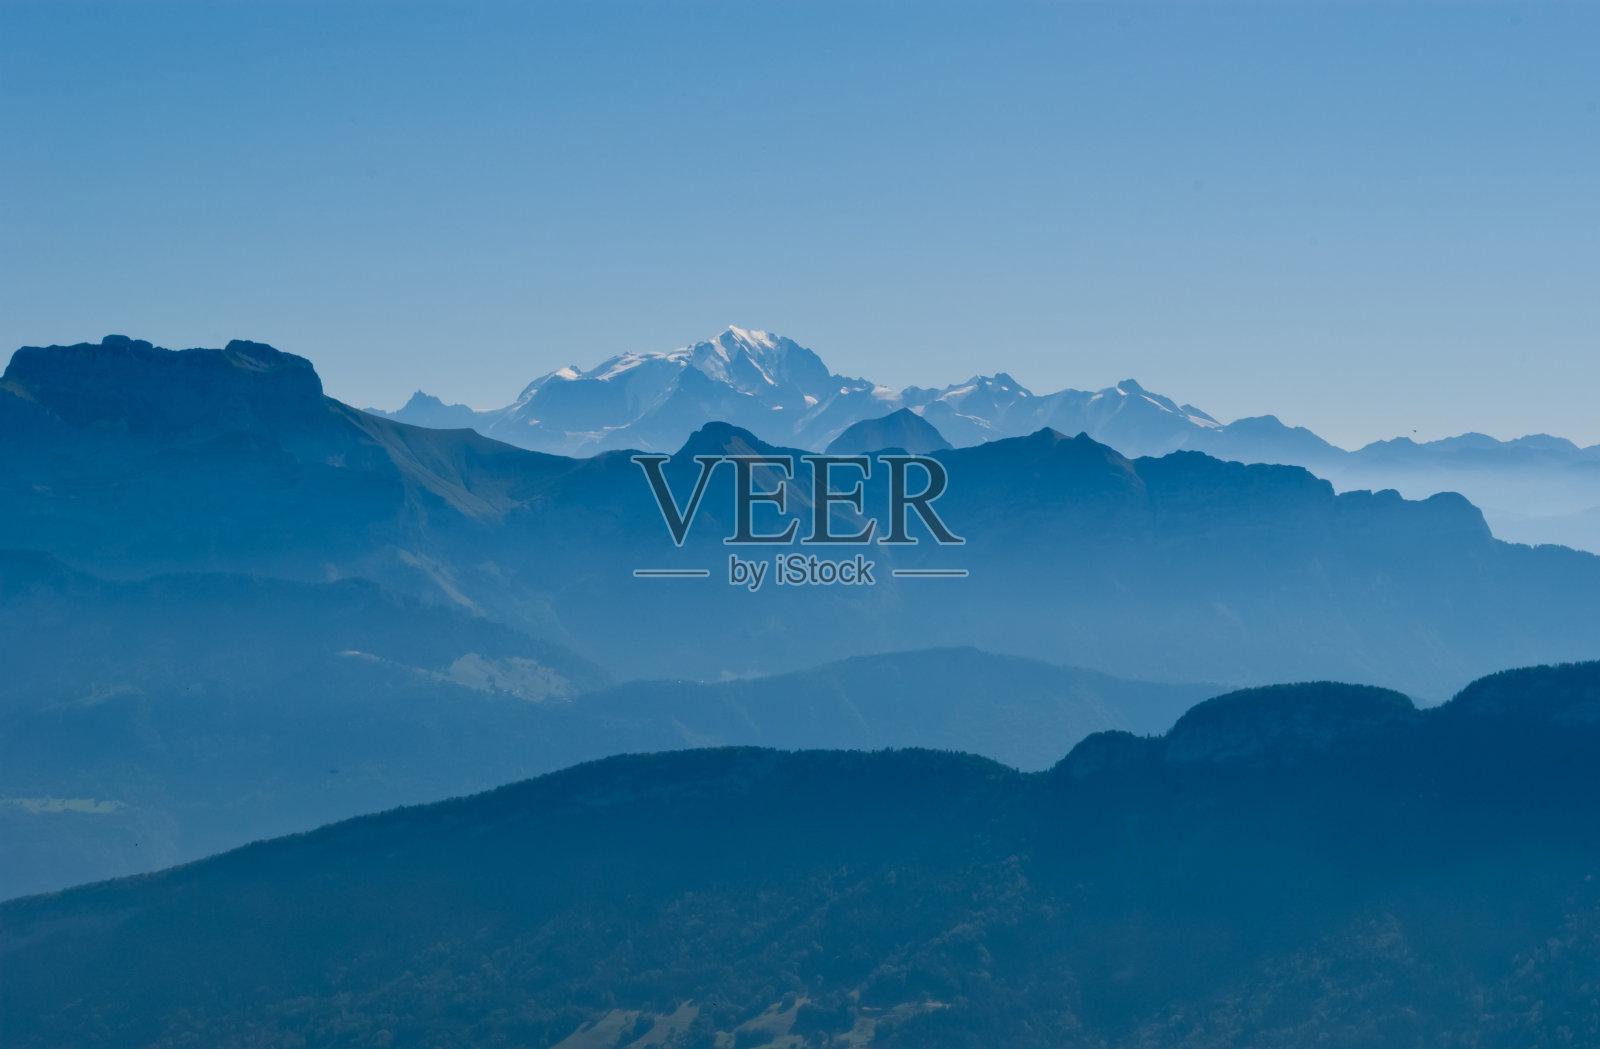 从法国沙蒂永克里特看到的山脉和勃朗峰照片摄影图片